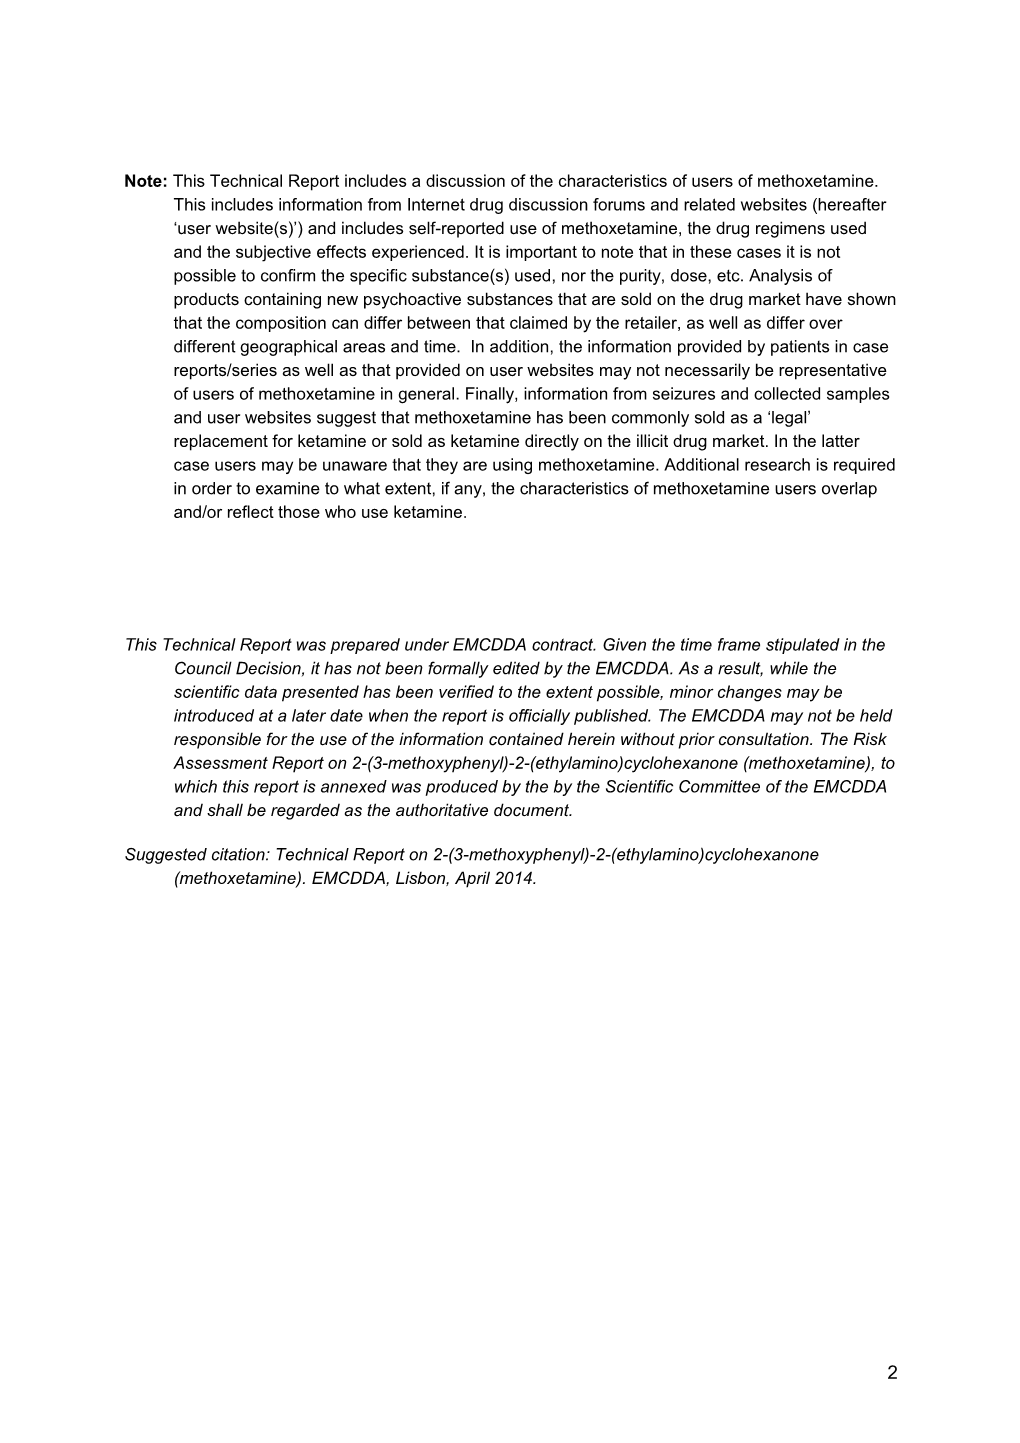 Annex 2. Technical Report on 2-(3-Methoxyphenyl)-2-(Ethylamino)Cyclohexanone(Methoxetamine)